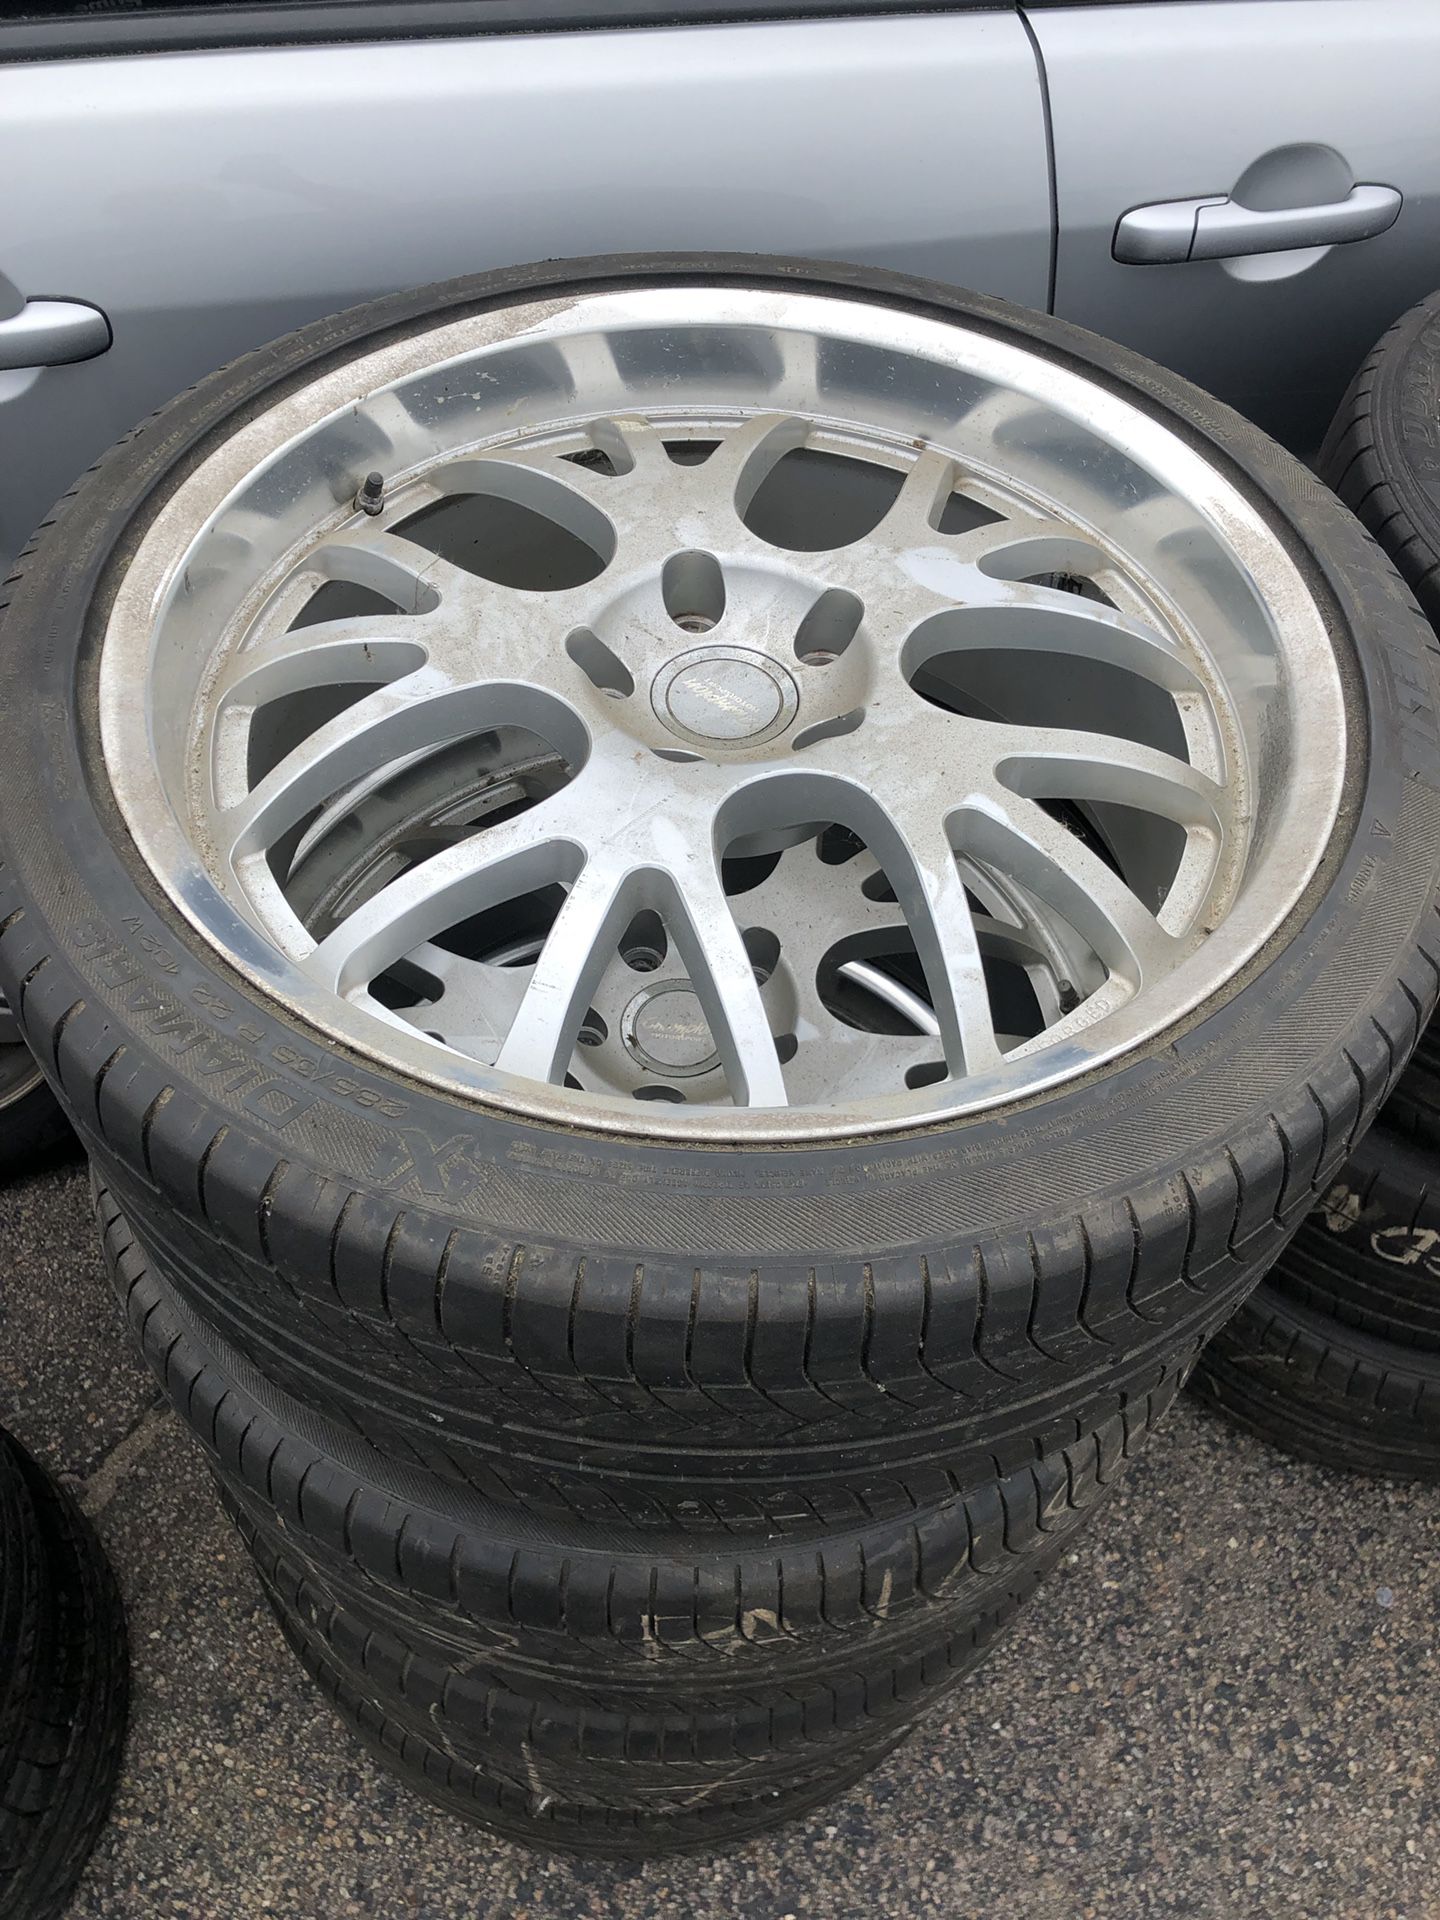 Porsche Cayenne wheels and tires.